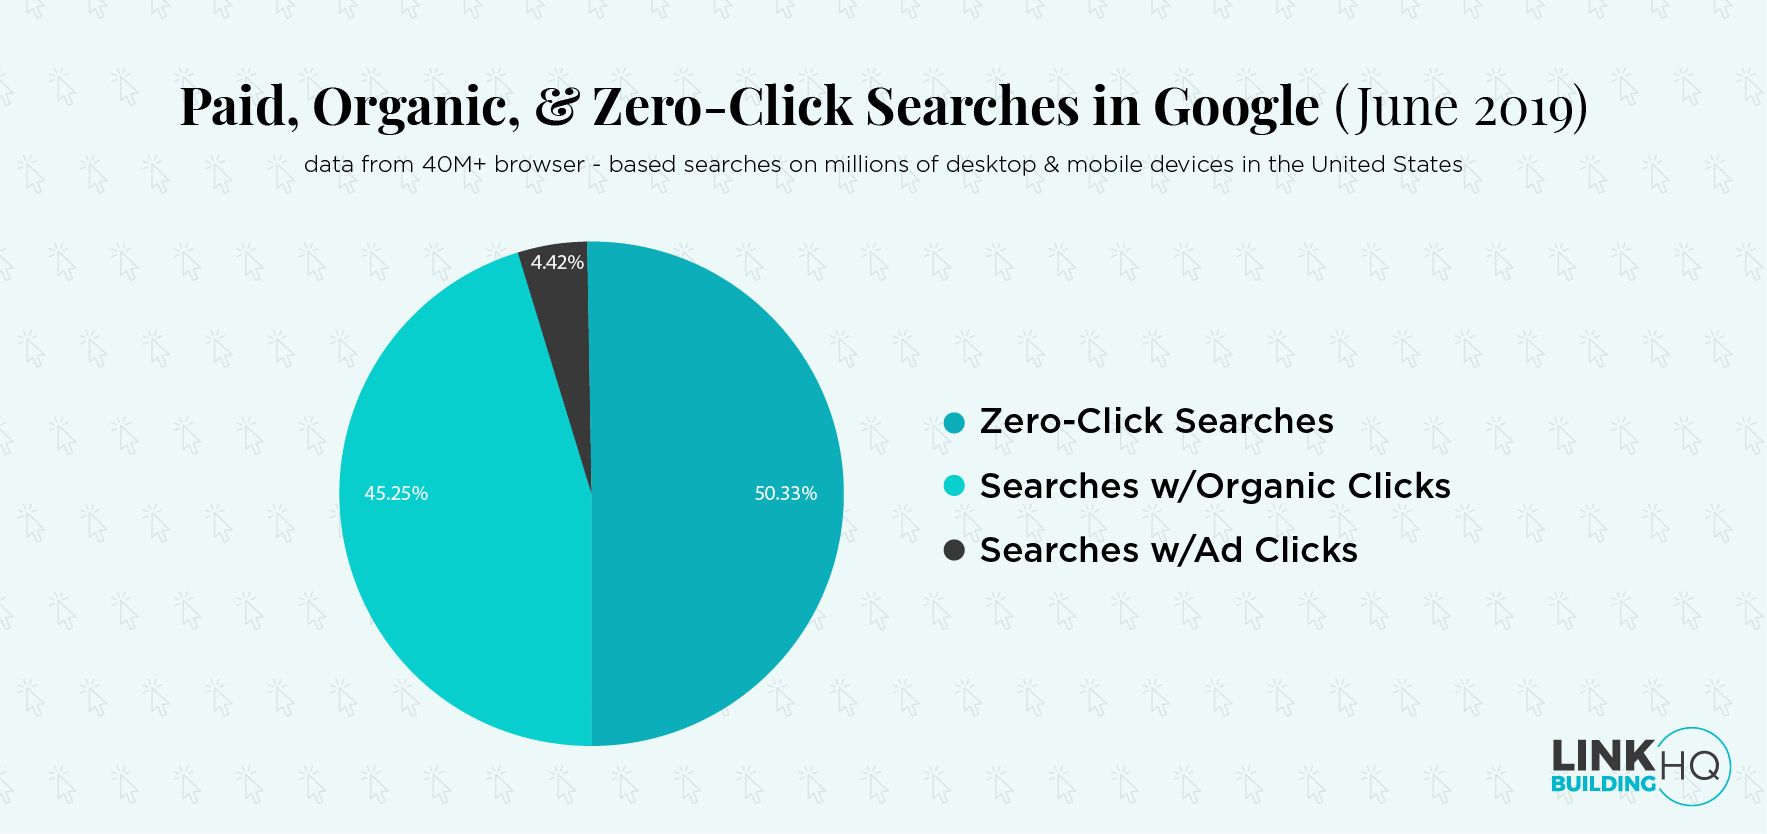 Zero-Click searches